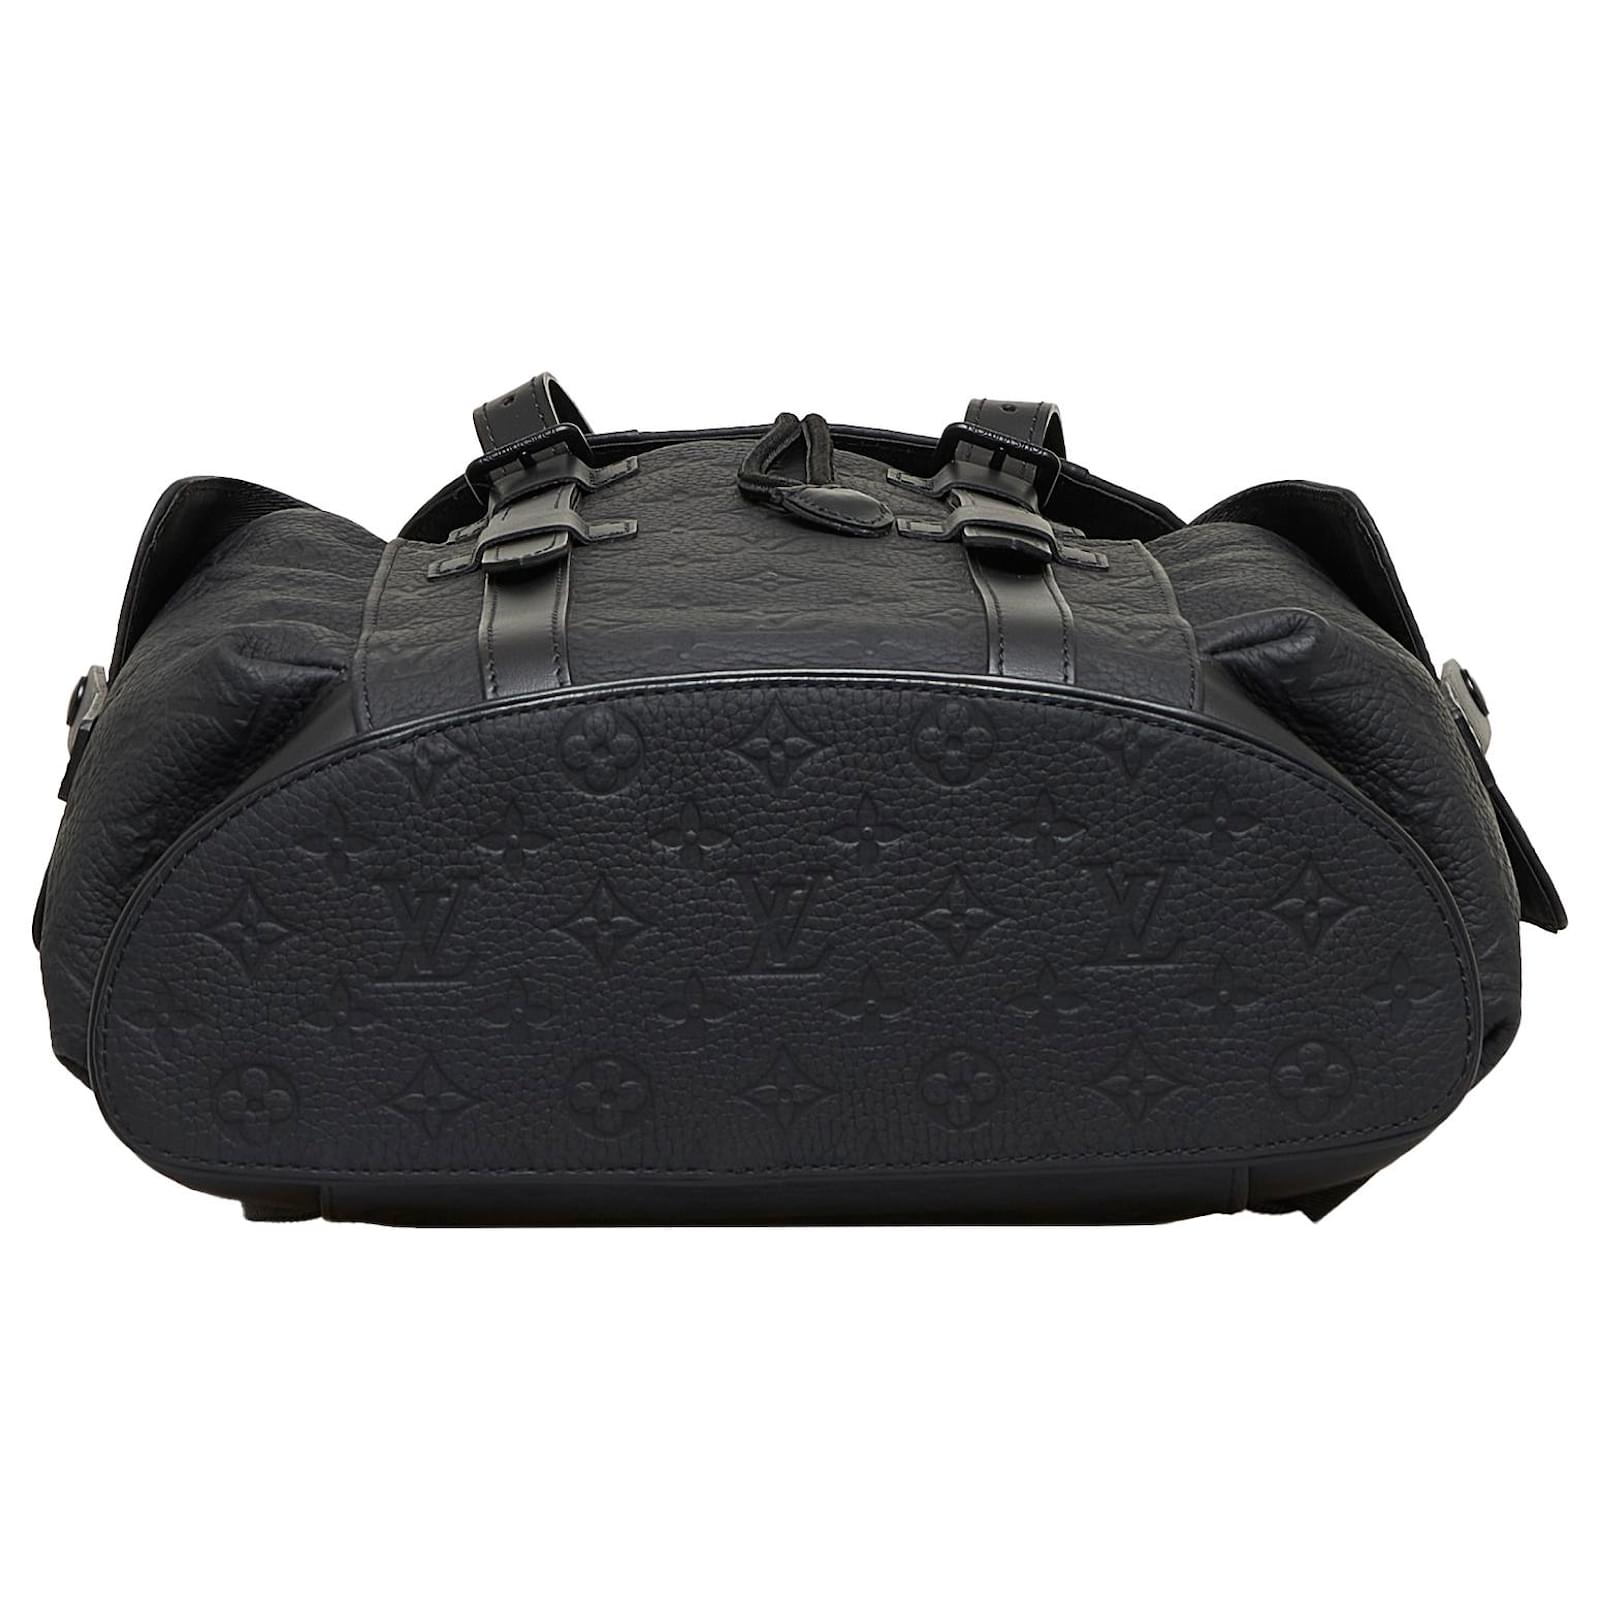 Louis Vuitton Christopher pm (M55699)  Black leather strap, Leather  straps, Black leather